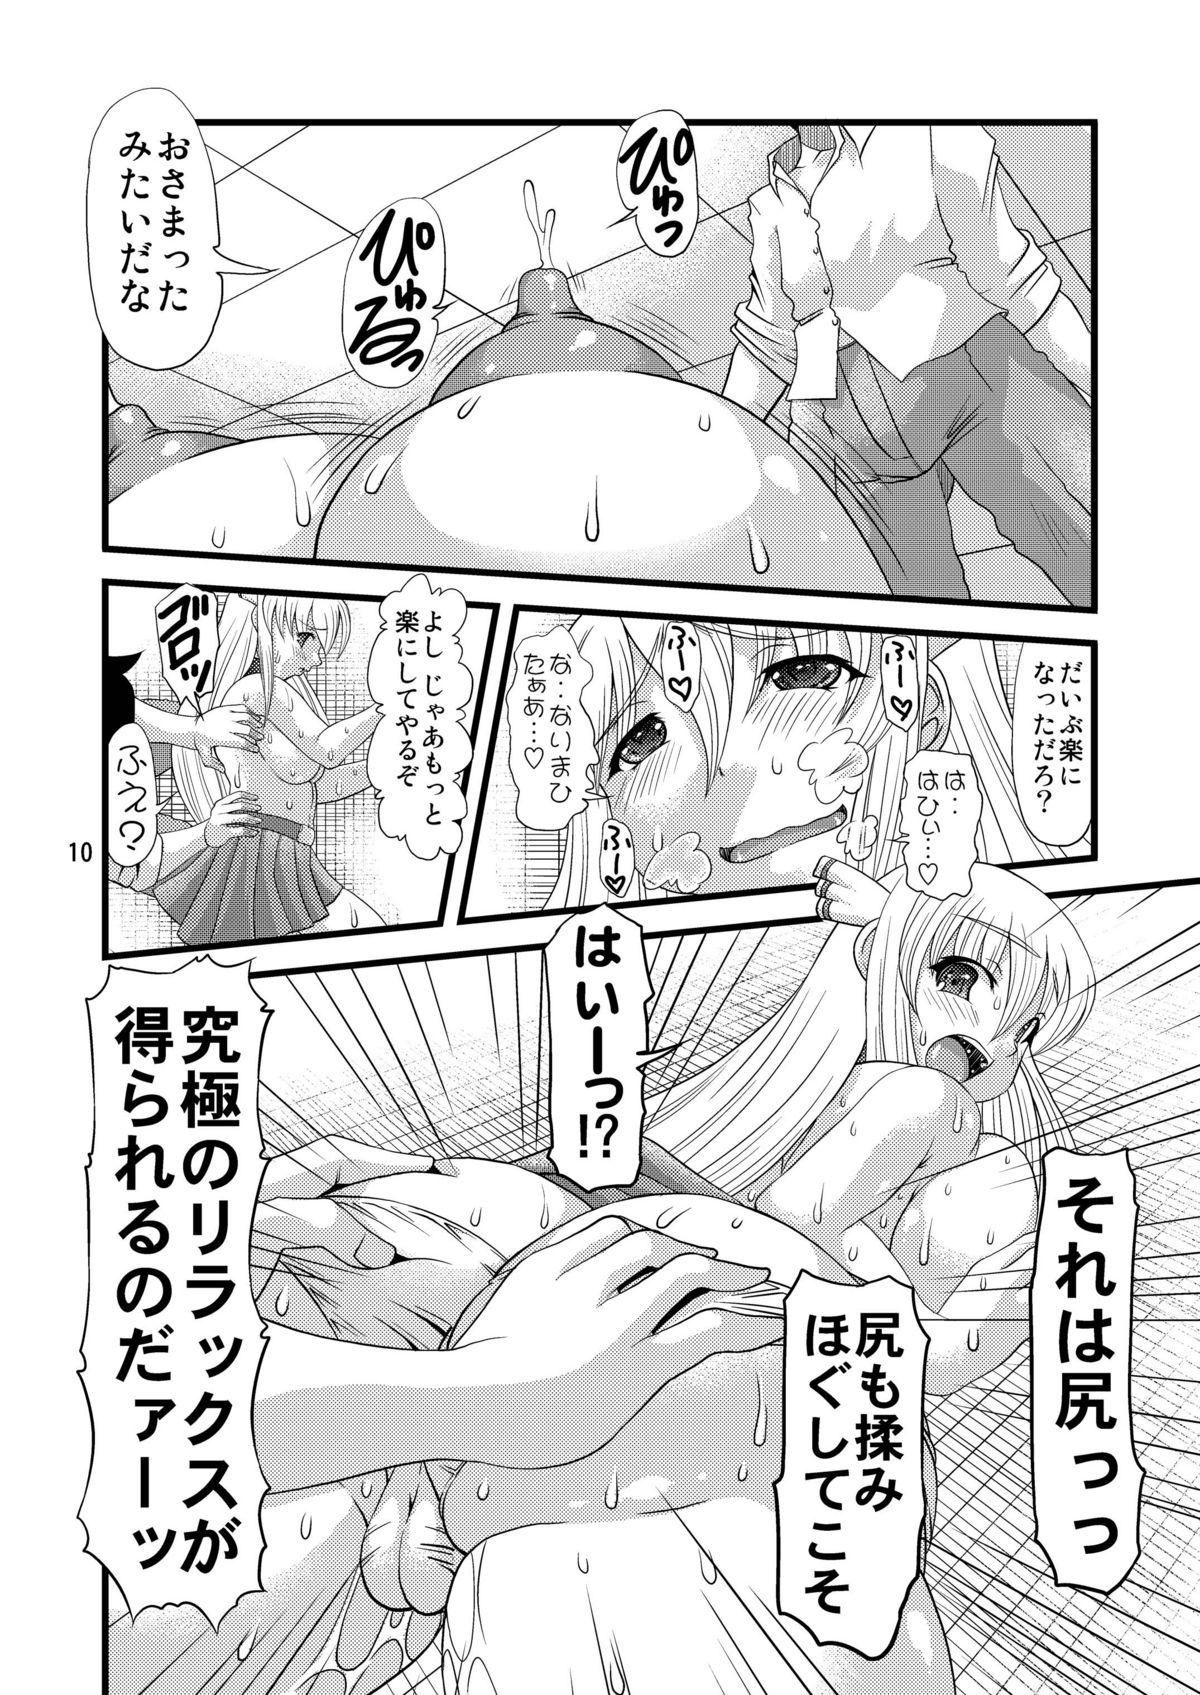 Spandex Oshiri no Tanima ni Insert!! - Sora no otoshimono Celeb - Page 10